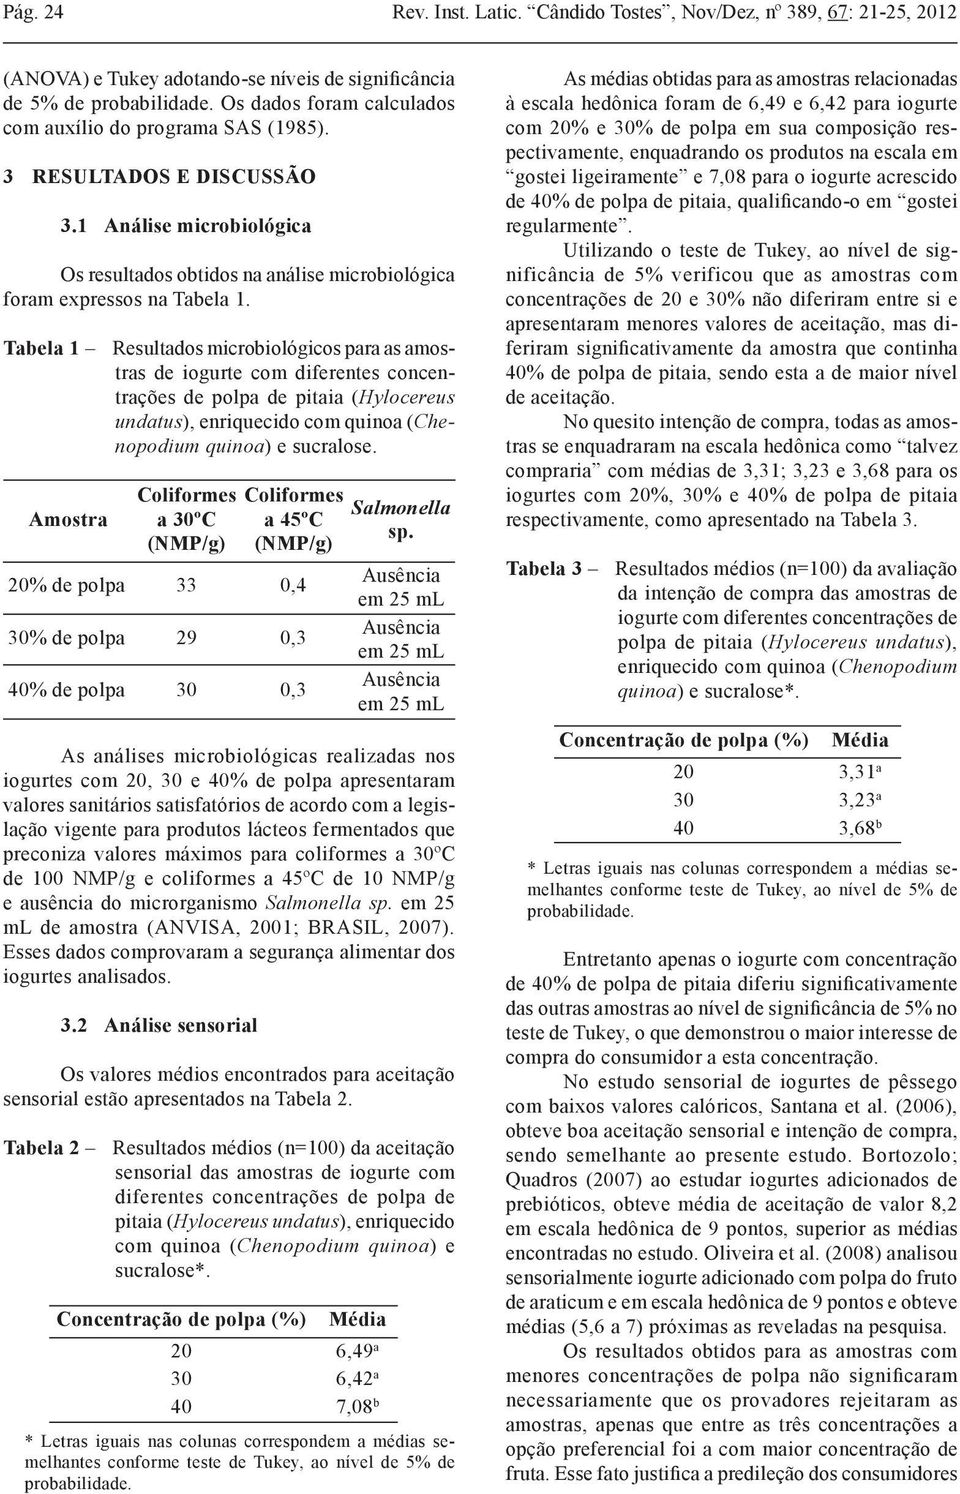 Tabela 1 Resultados microbiológicos para as amostras de iogurte com diferentes concentrações de polpa de pitaia (Hylocereus undatus), enriquecido com quinoa (Chenopodium quinoa) e sucralose.